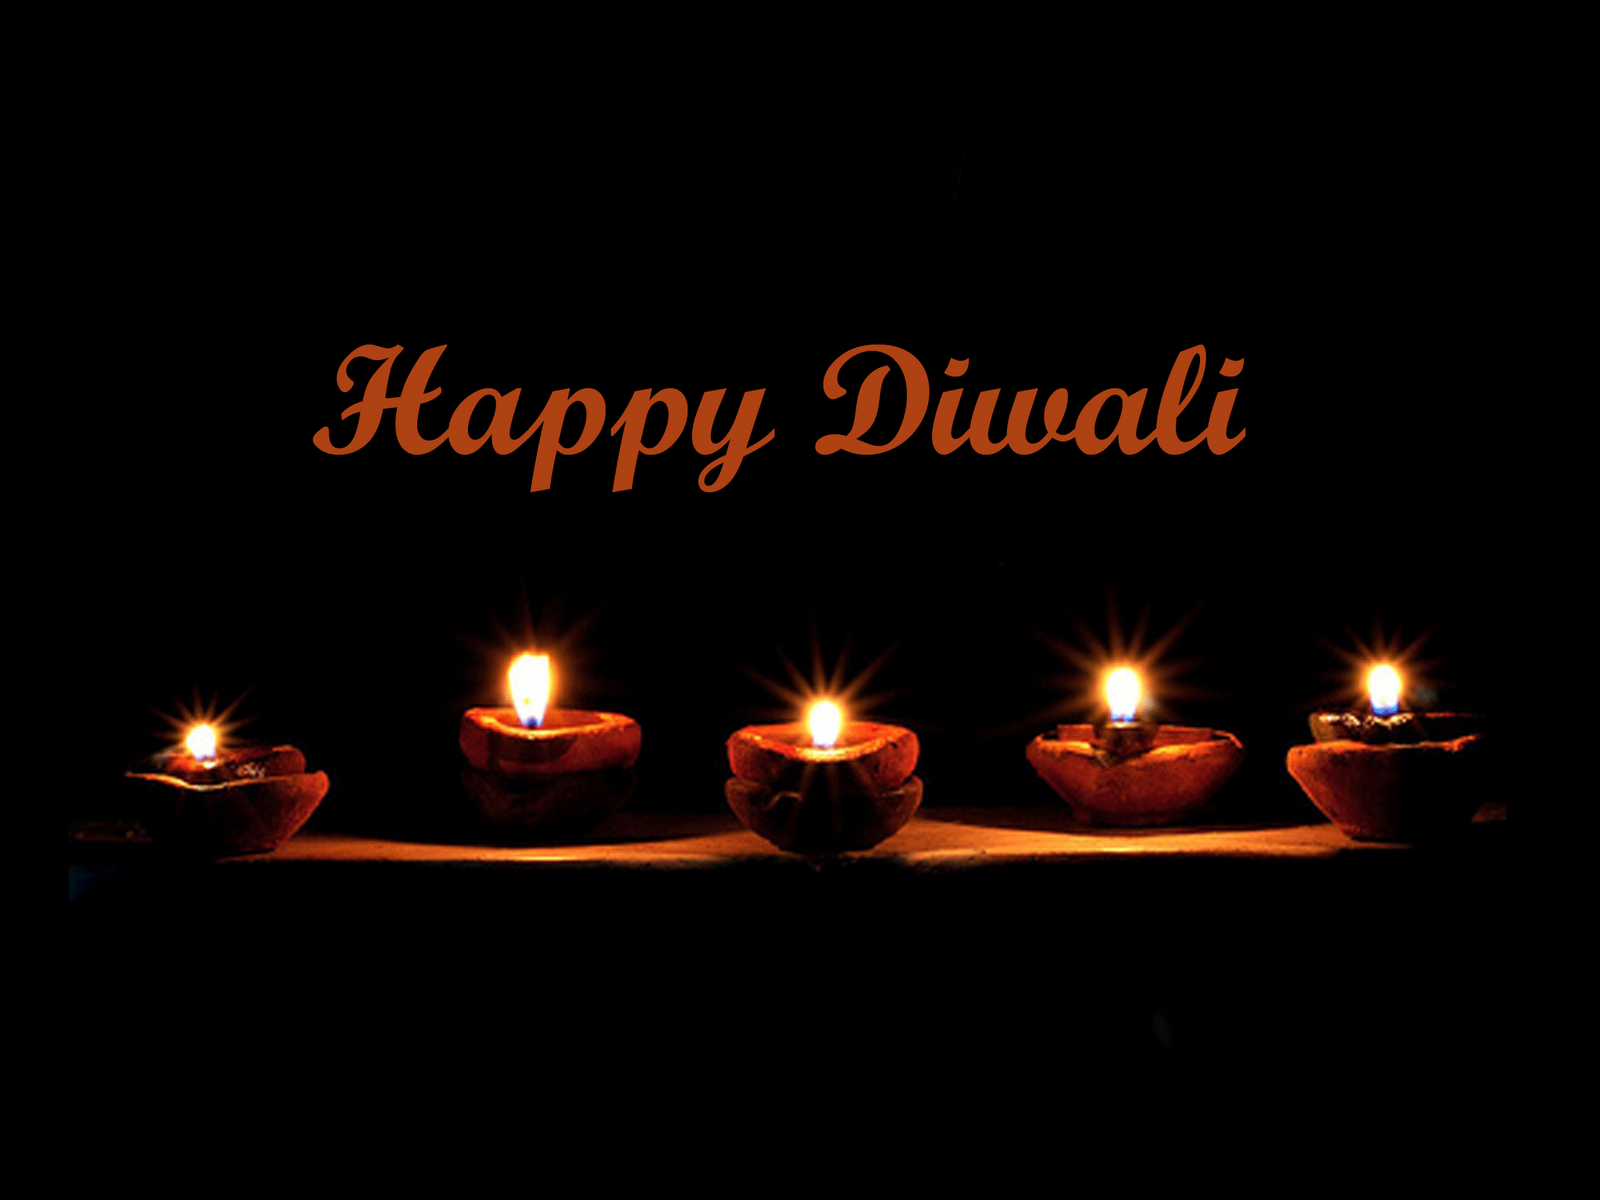 diwali wishes